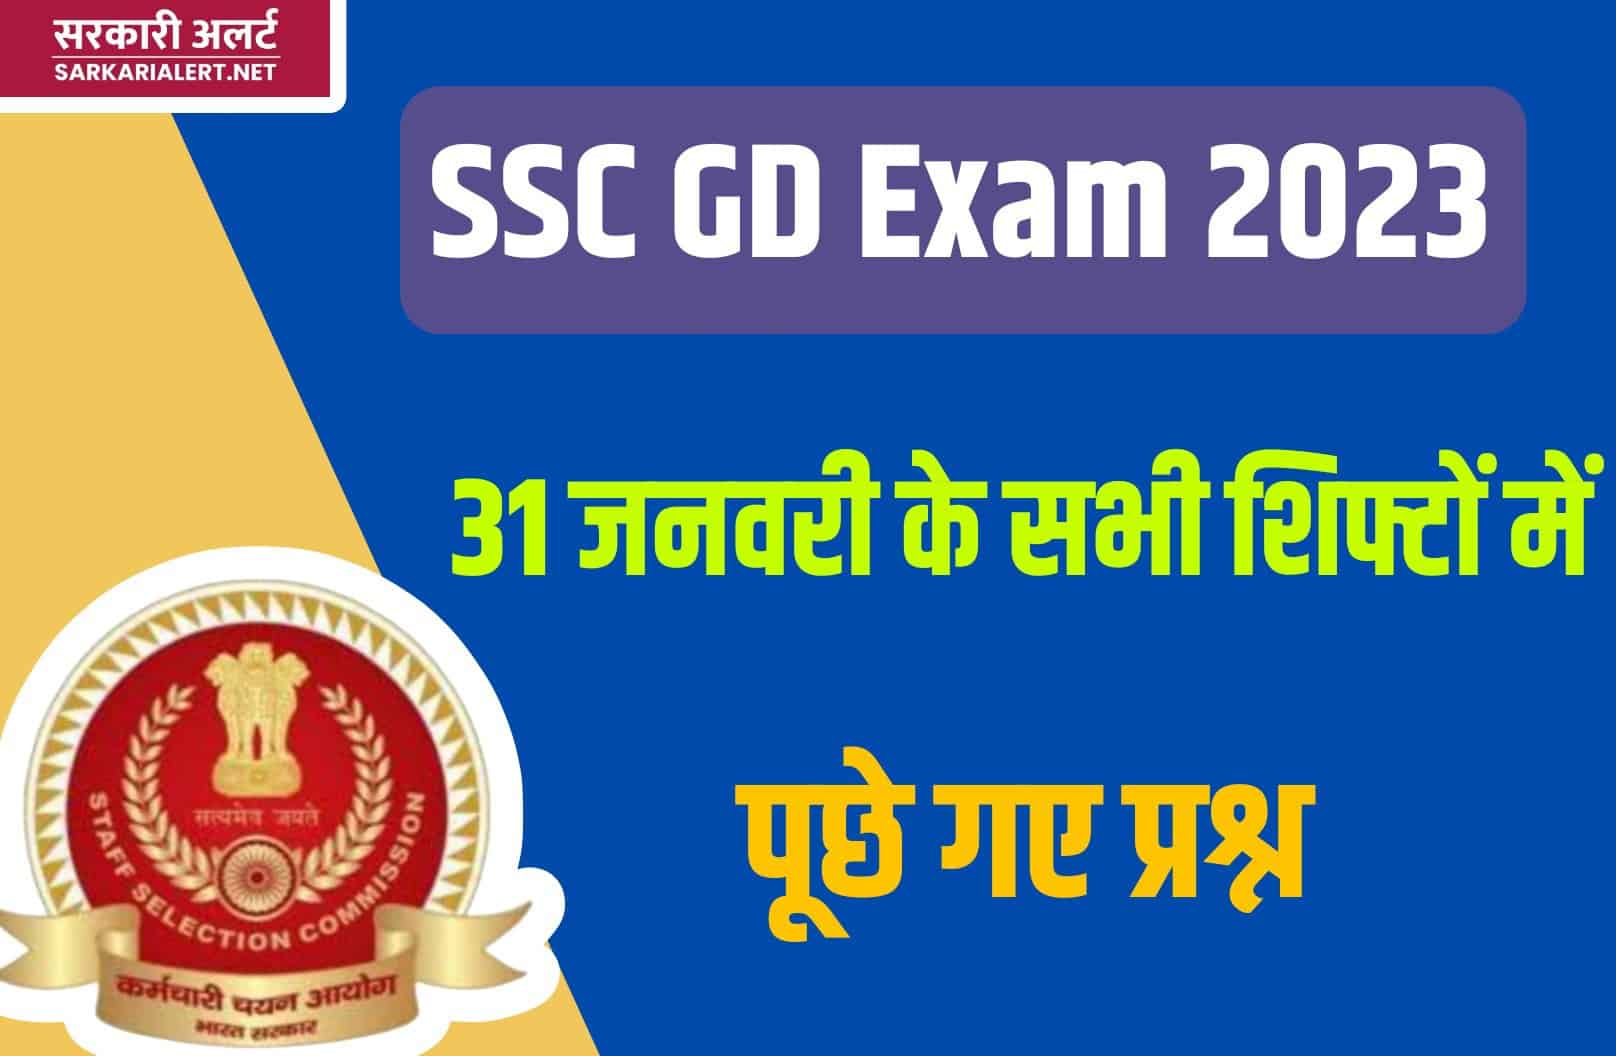 SSC GD Exam 2023 | 31 जनवरी परीक्षा के सभी शिफ्टों में पूछे गए मुख्य प्रश्नों